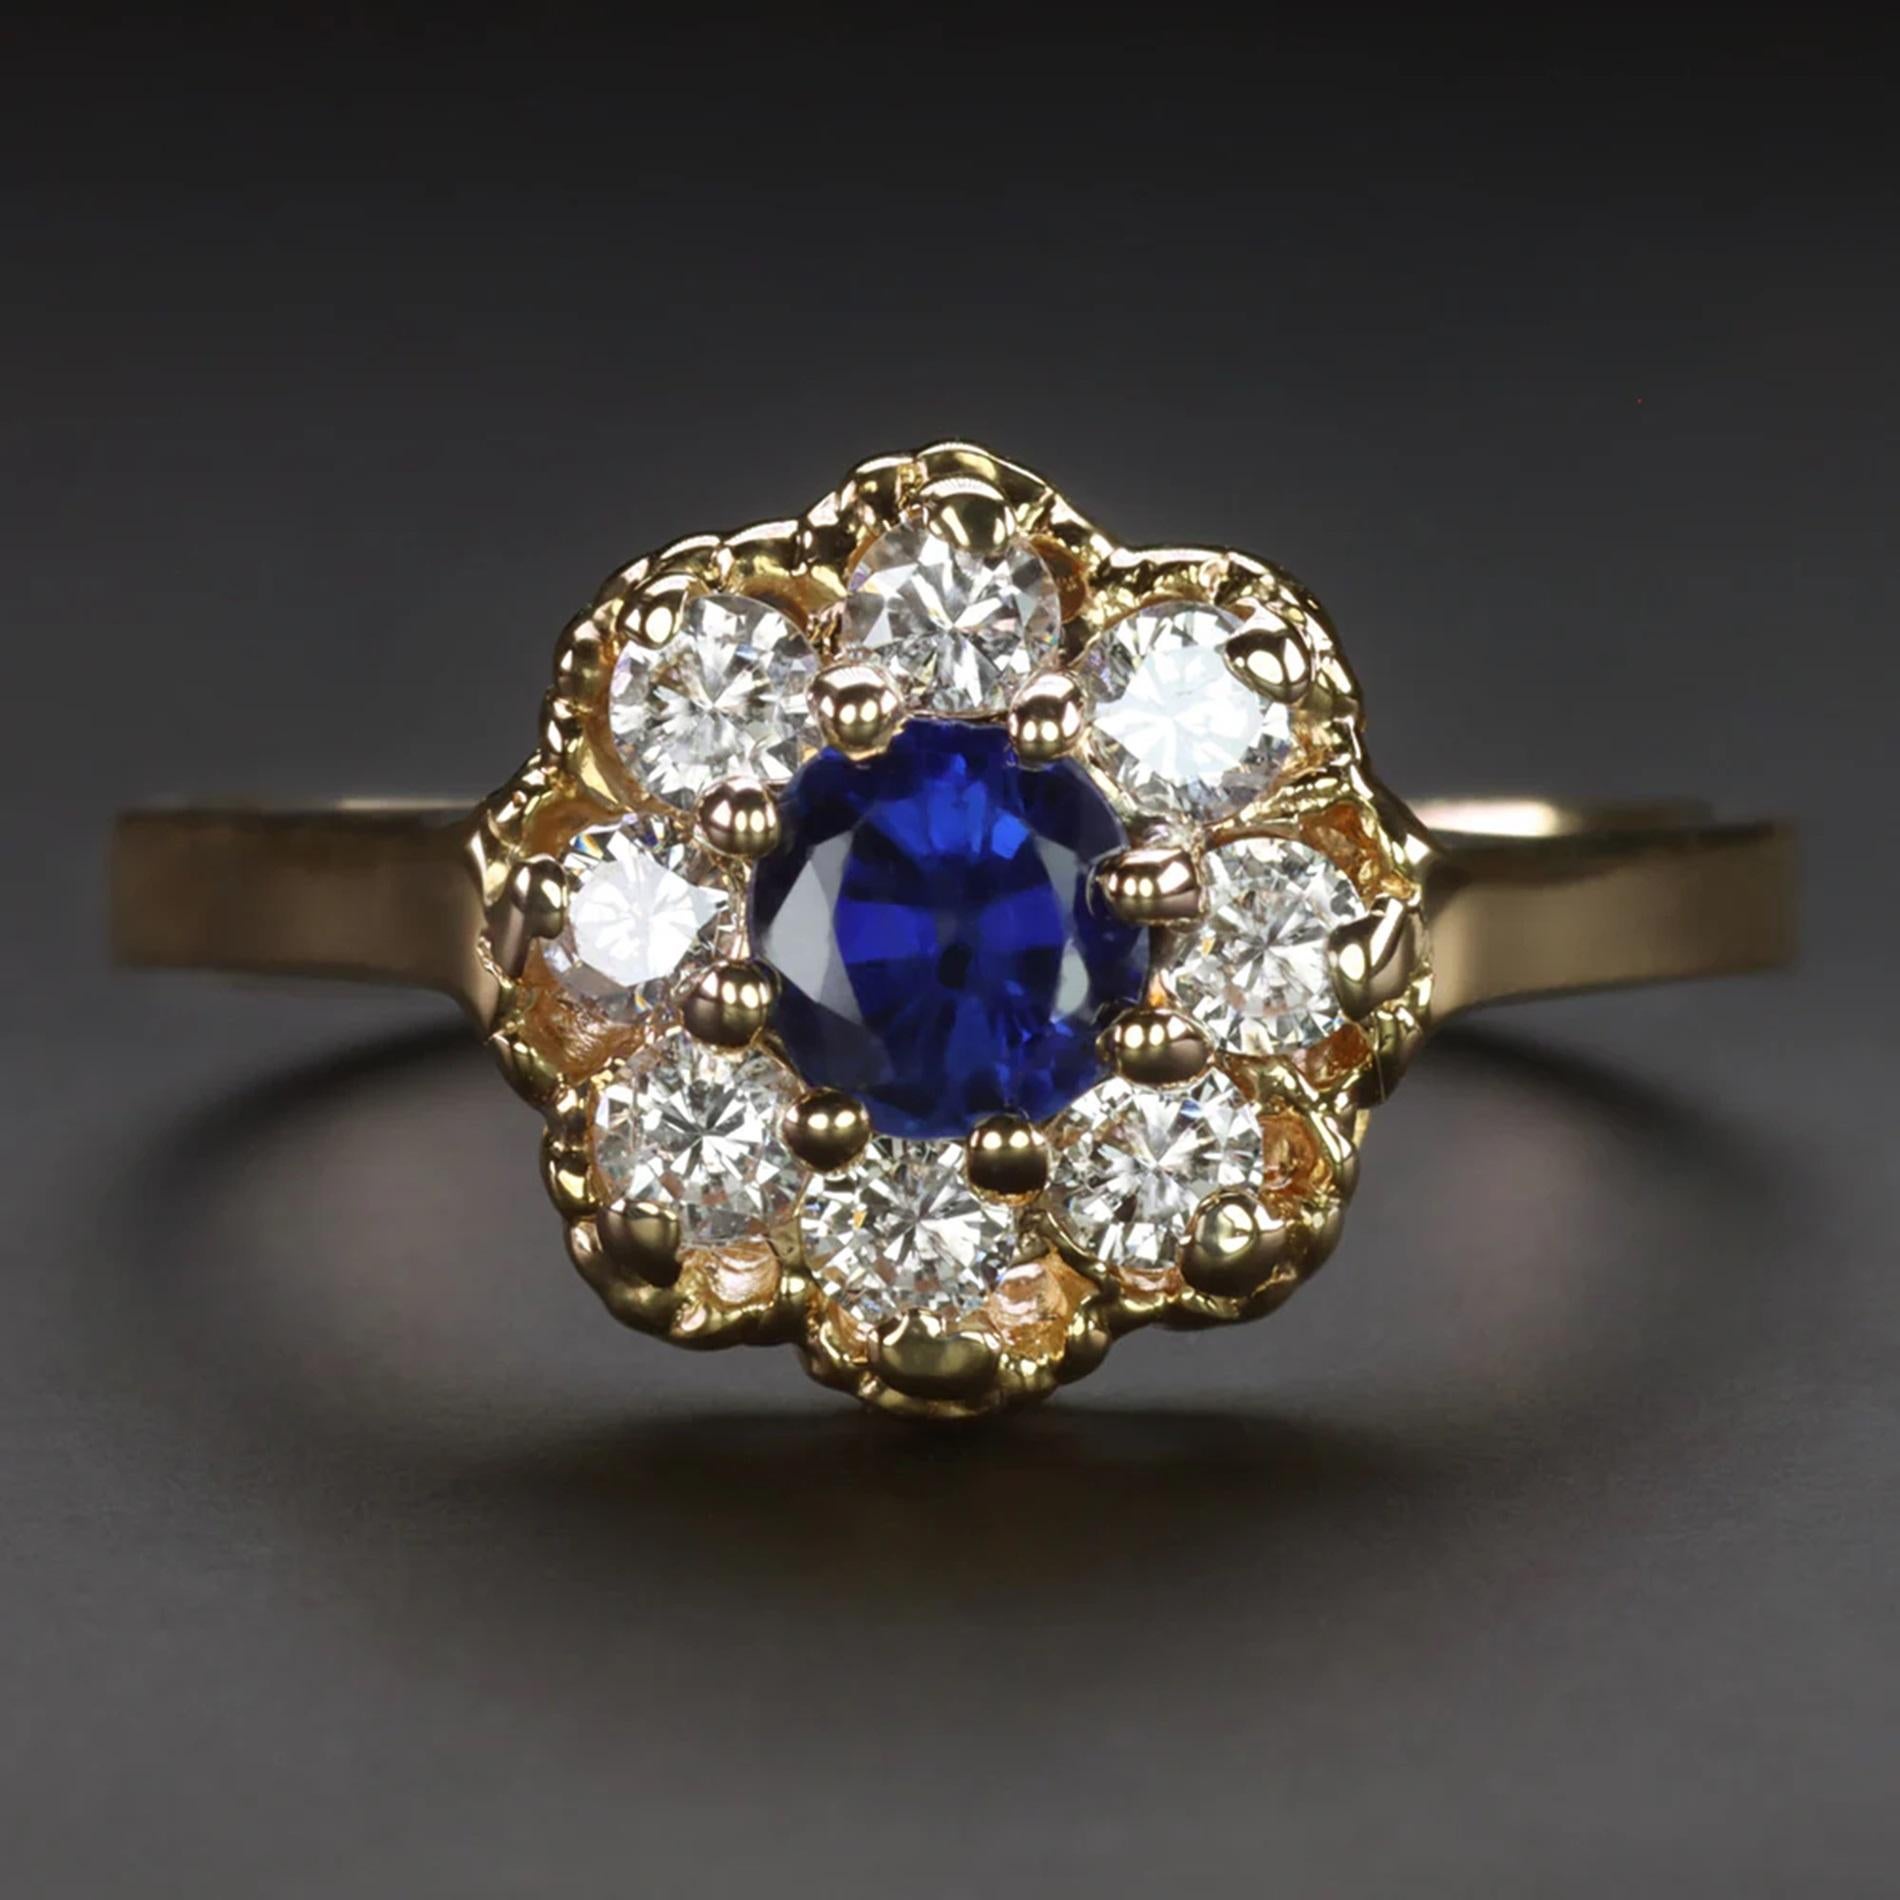 Ein bezaubernder Saphir- und Diamantring mit einem zeitlosen Design, das die Zeit überdauert hat. Mit einem üppigen blauen Saphir, der von einem beträchtlichen Diamantenhalo umgeben ist.

Zu den hervorgehobenen Merkmalen gehören:

Ein natürlicher